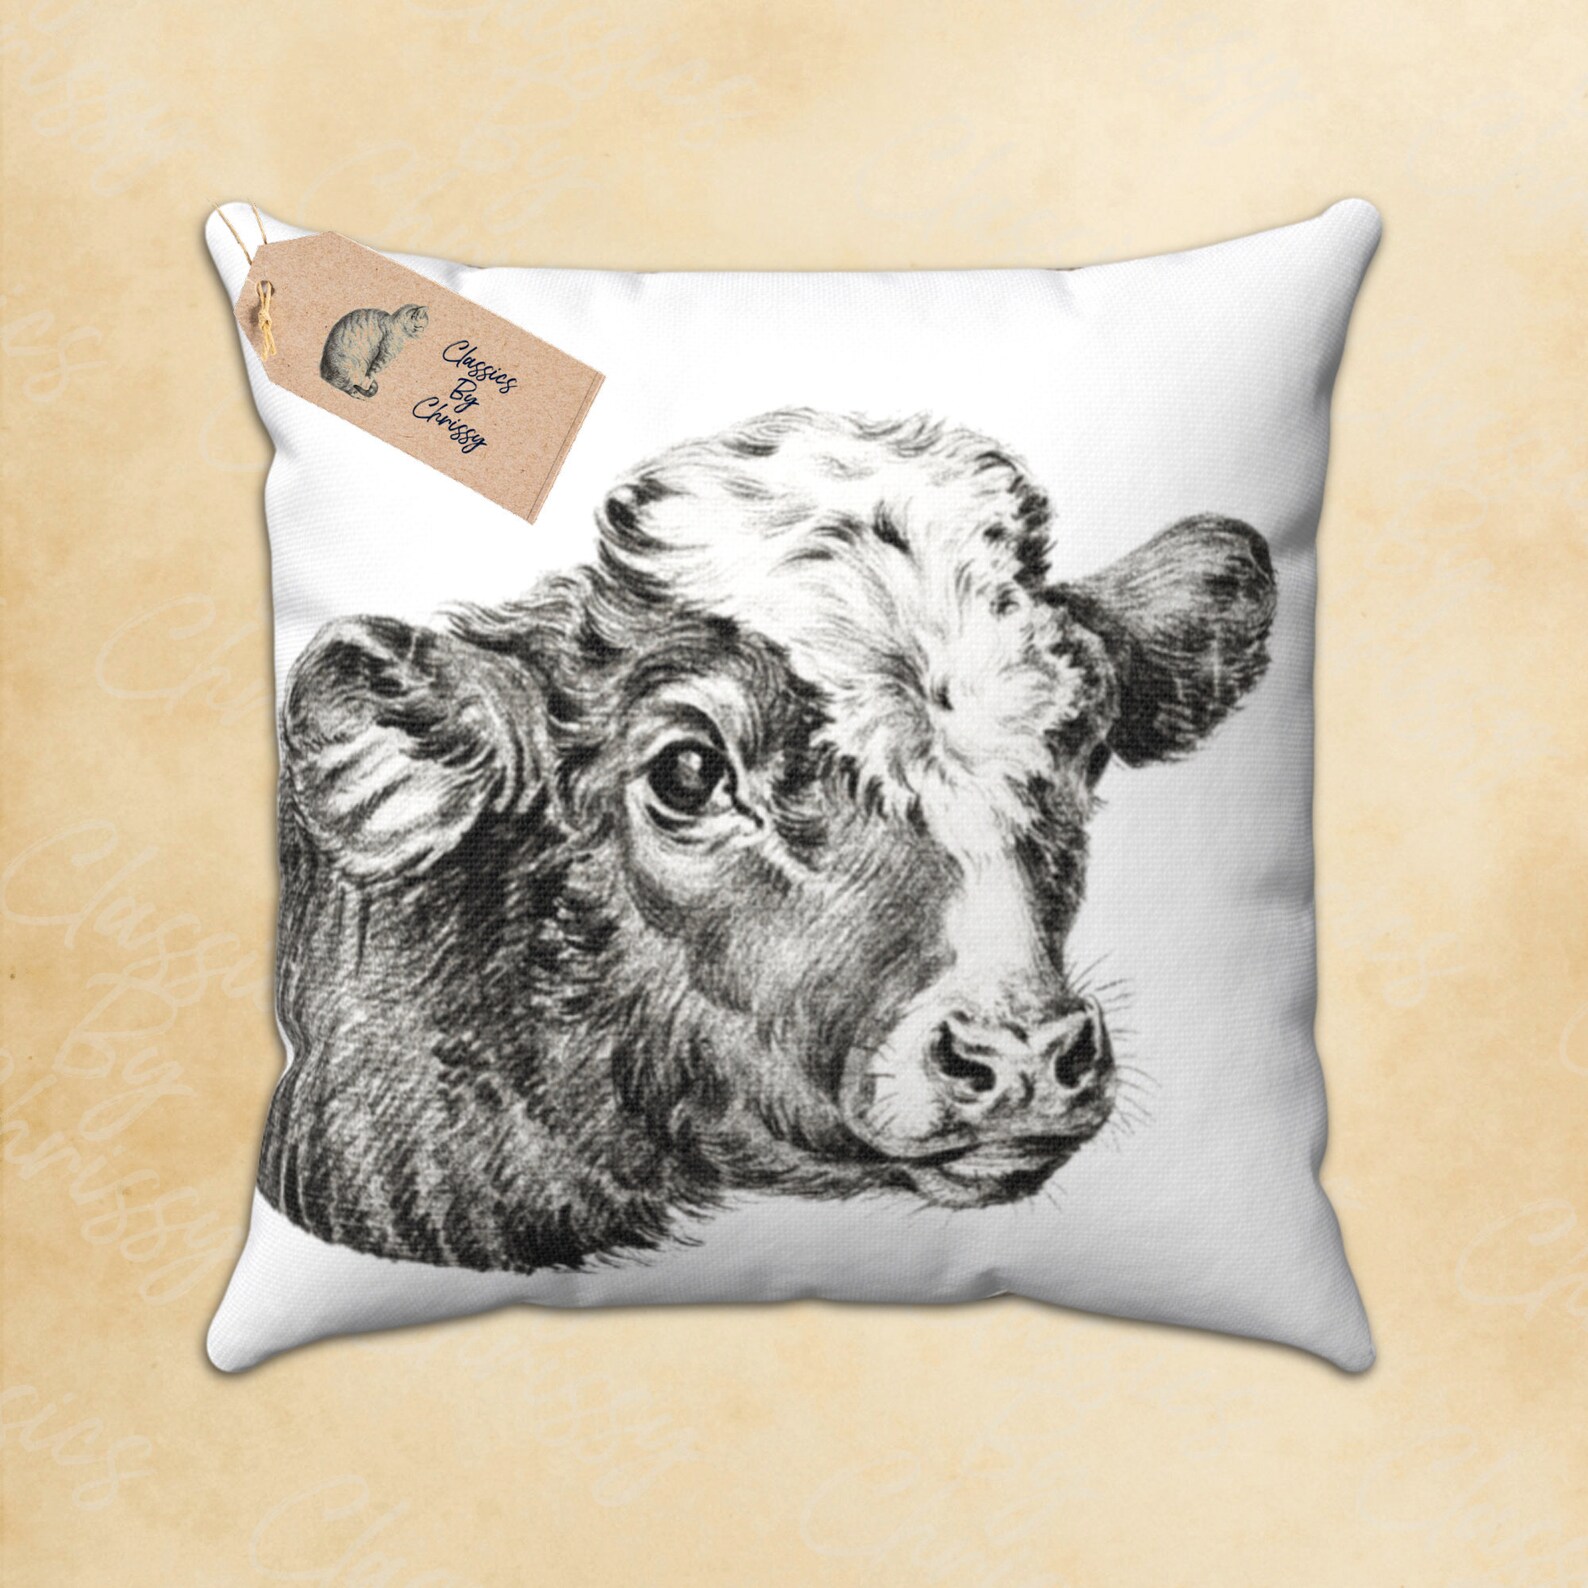 Smiling Vintage Steer Cow Design PNG Clipart Instant Digital Download ...